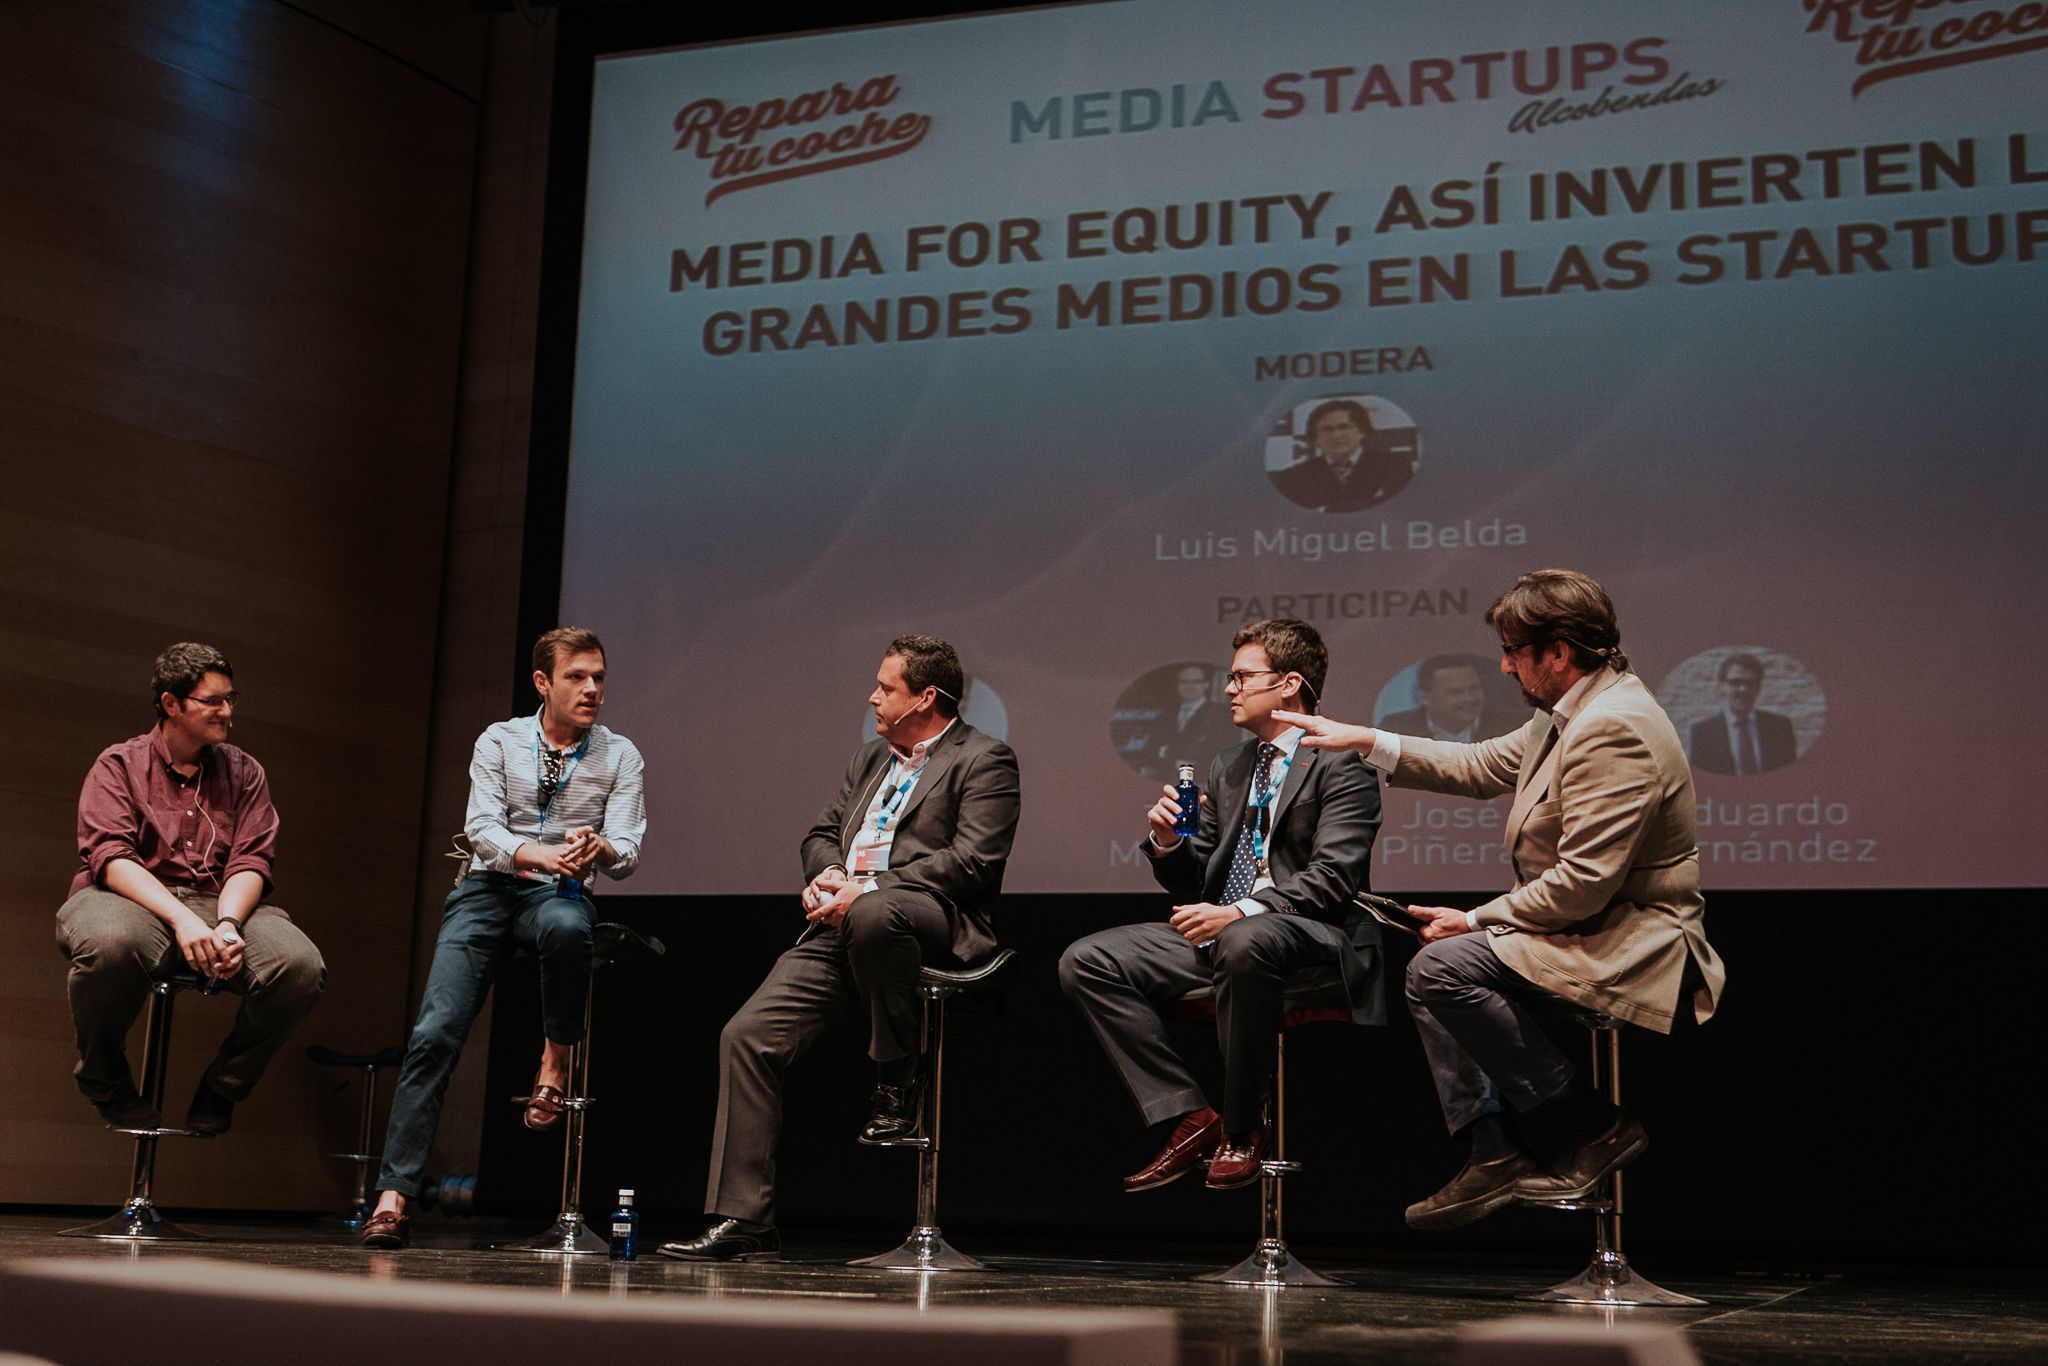 Media Startup Alcobendas tendrá el mayor networking del mundo entre periodistas y emprendedores